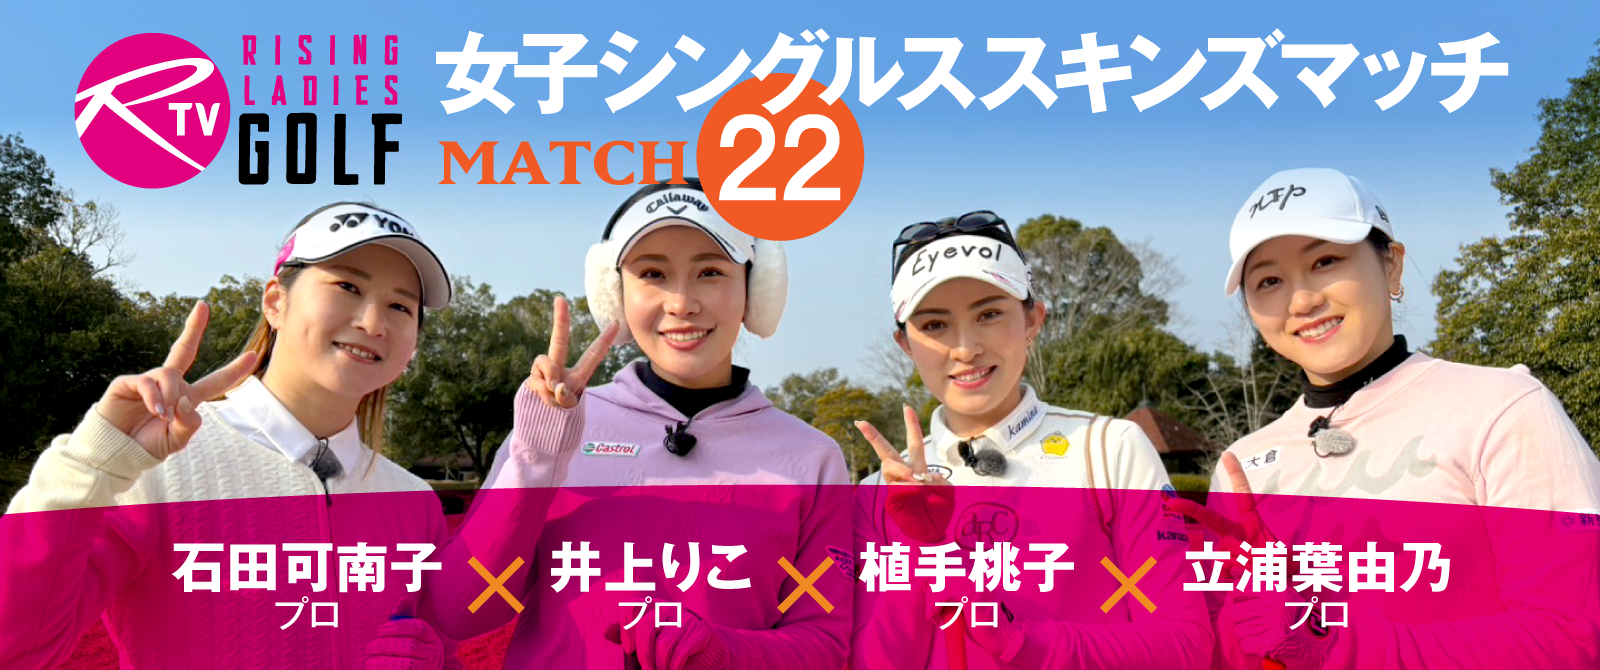 ライジングレディースゴルフTV MATCH22 女子シングルススキンズマッチ